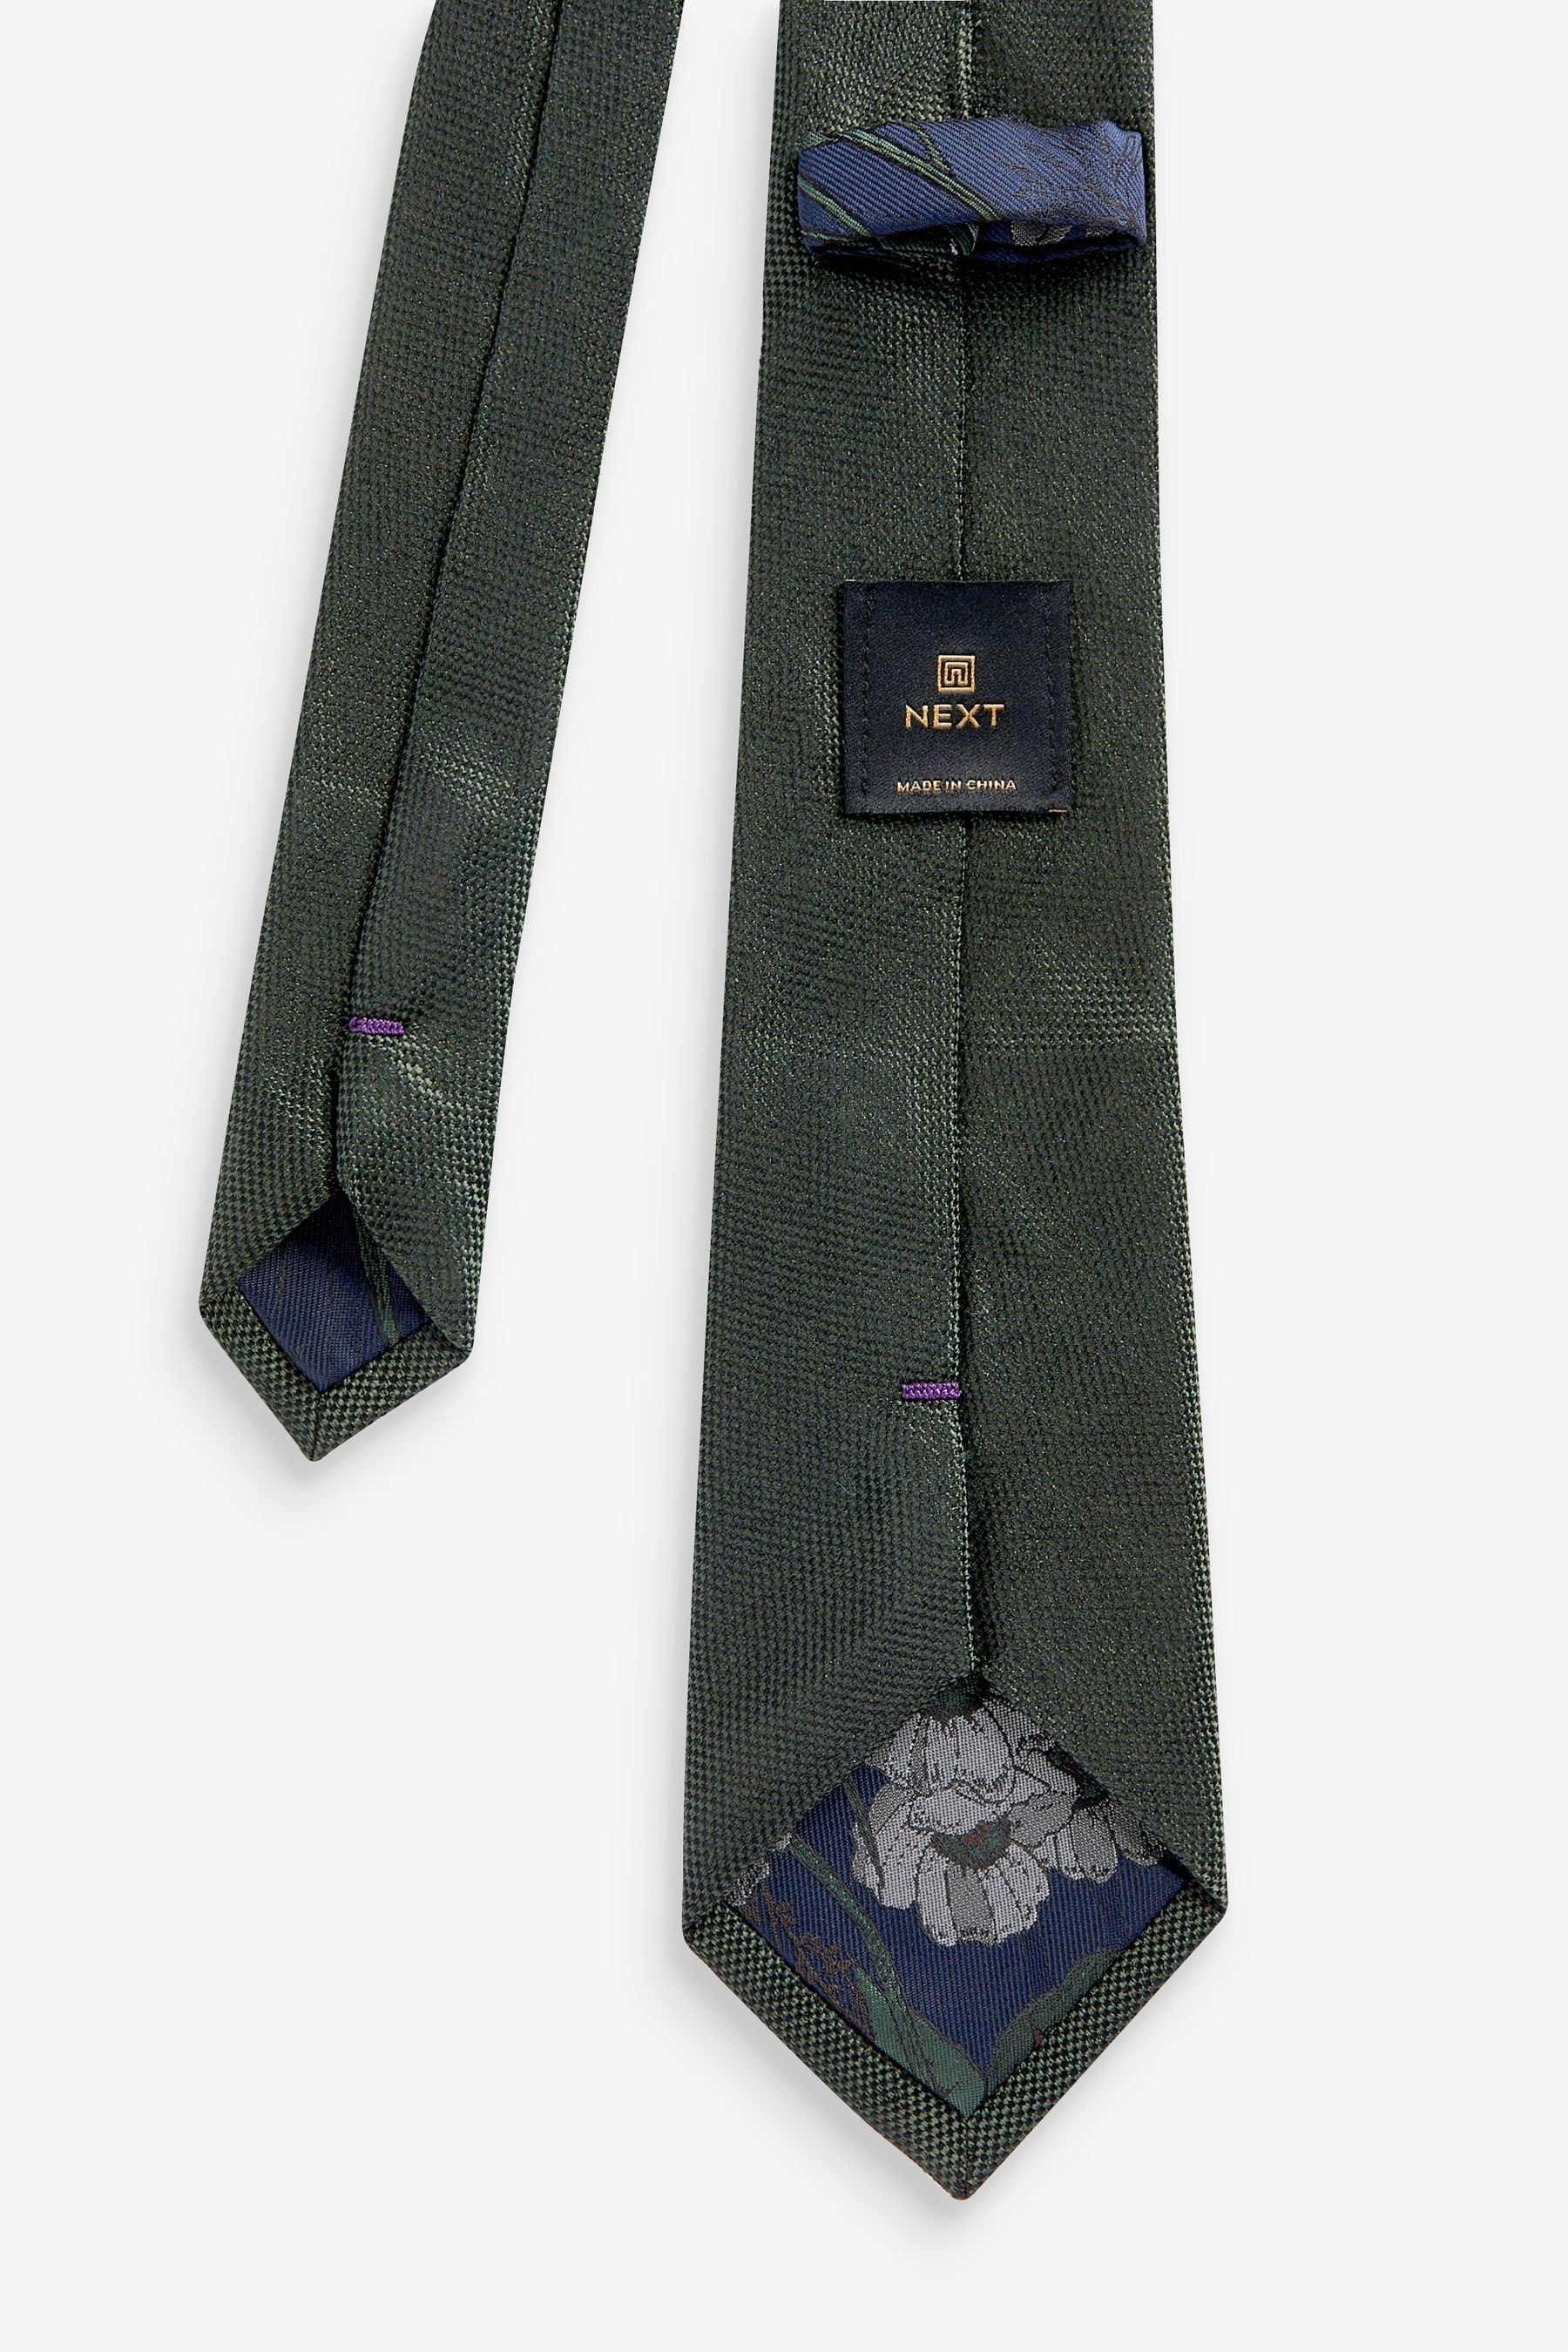 Next Krawatte aus Set Blue Einstecktuch (2-St) und Floral Seidenkrawatte Forest Green/Navy